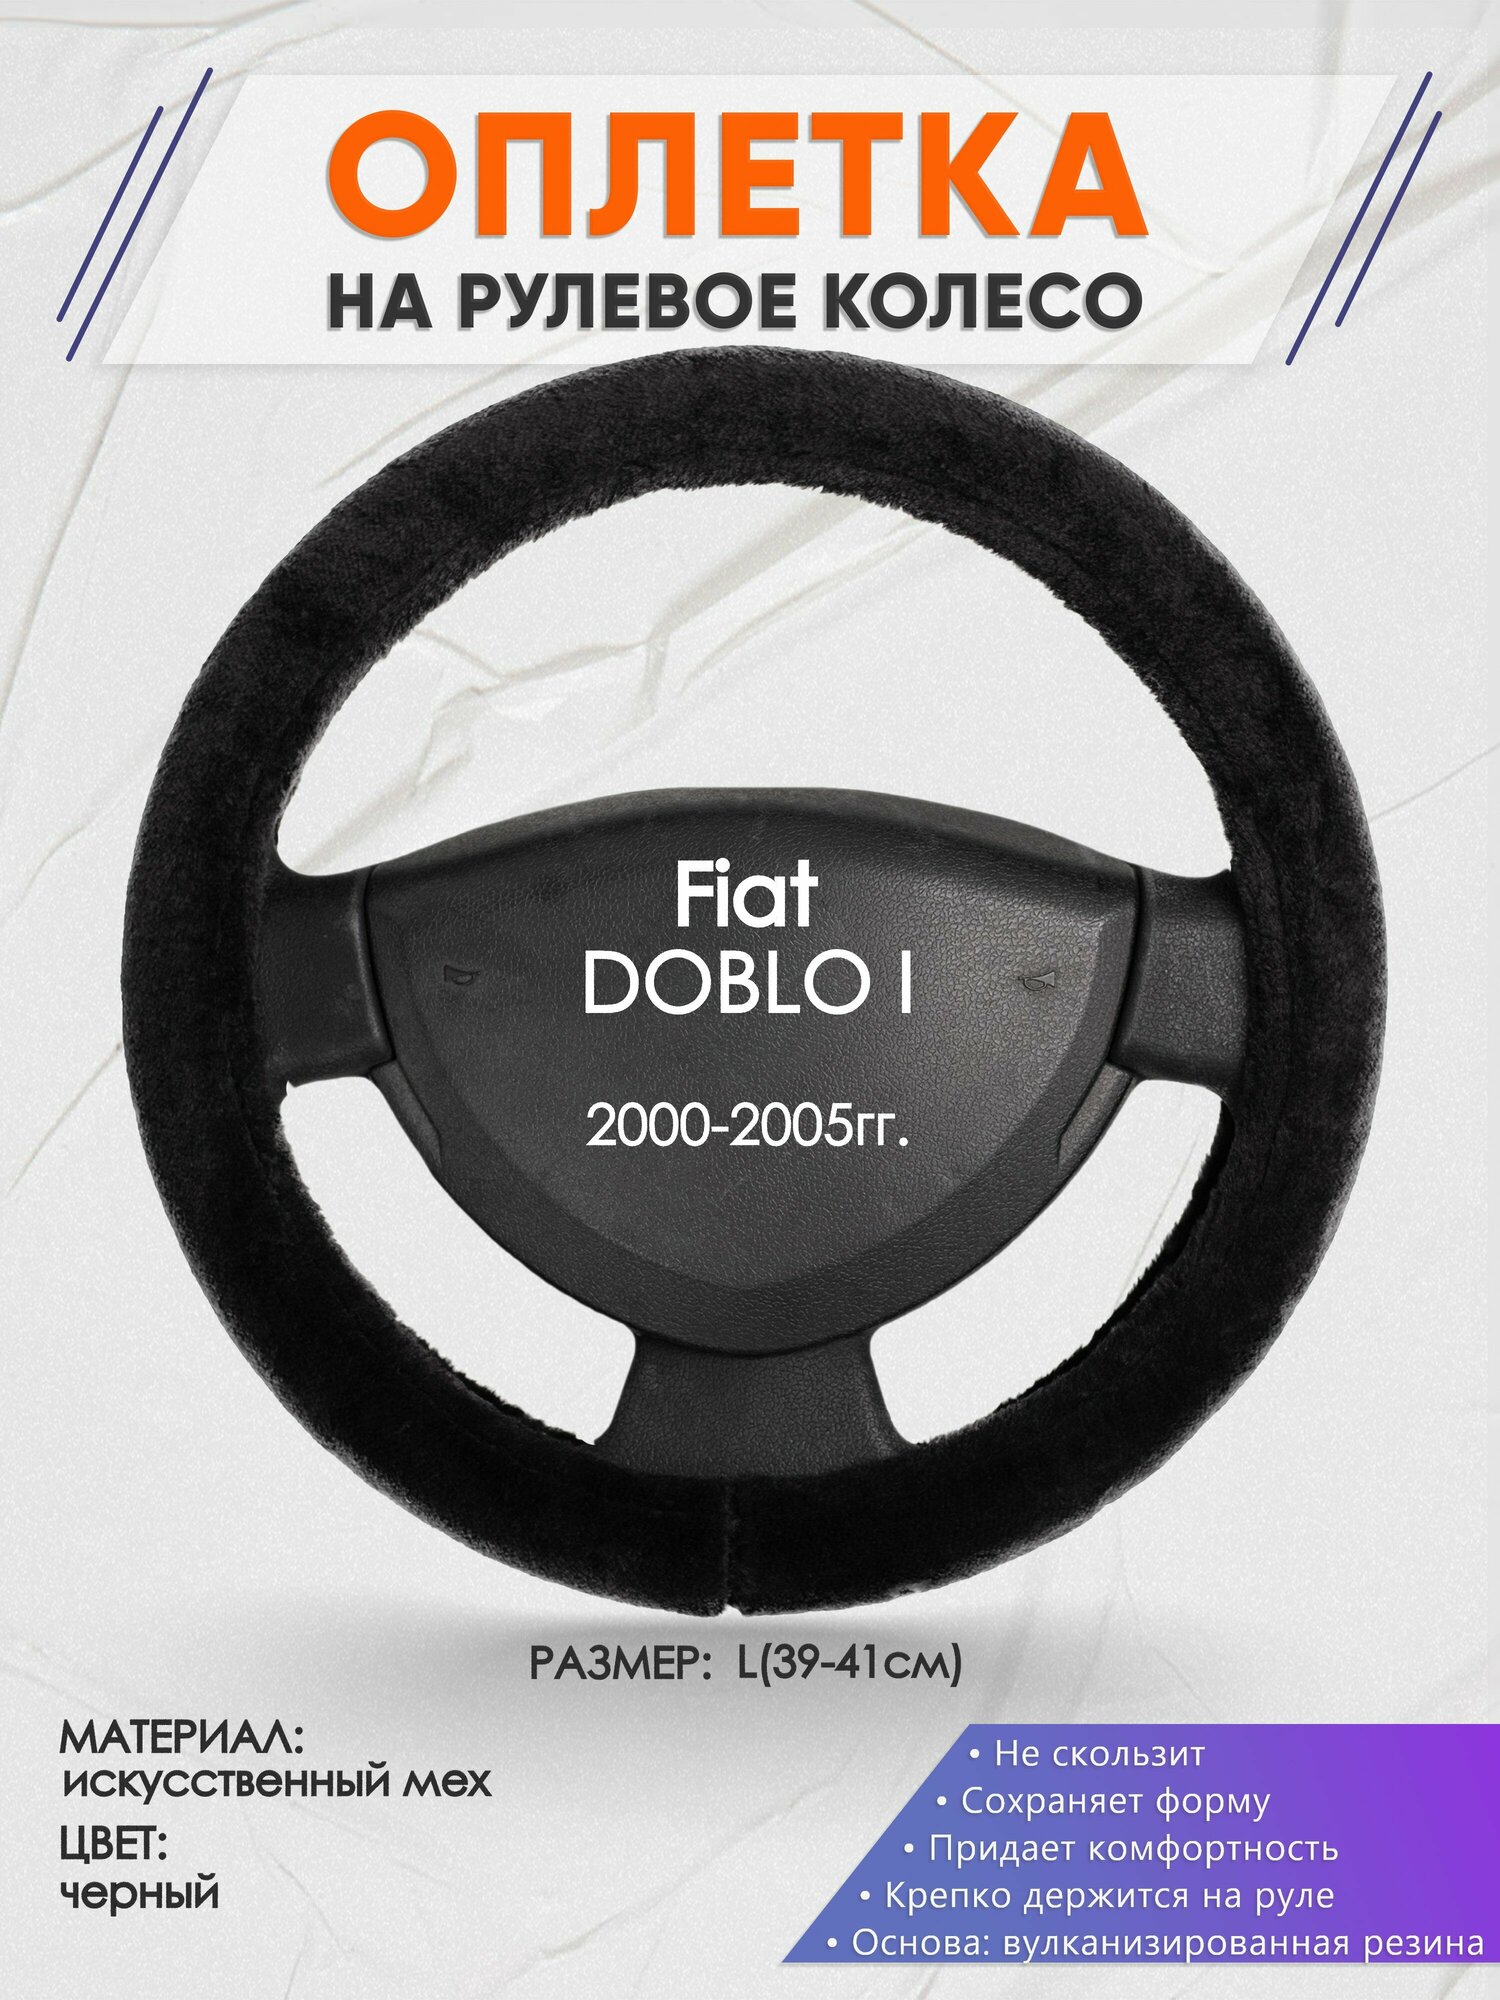 Оплетка на руль для Fiat DOBLO I(Фиат Добло) 2000-2005 L(39-41см) Искусственный мех 45